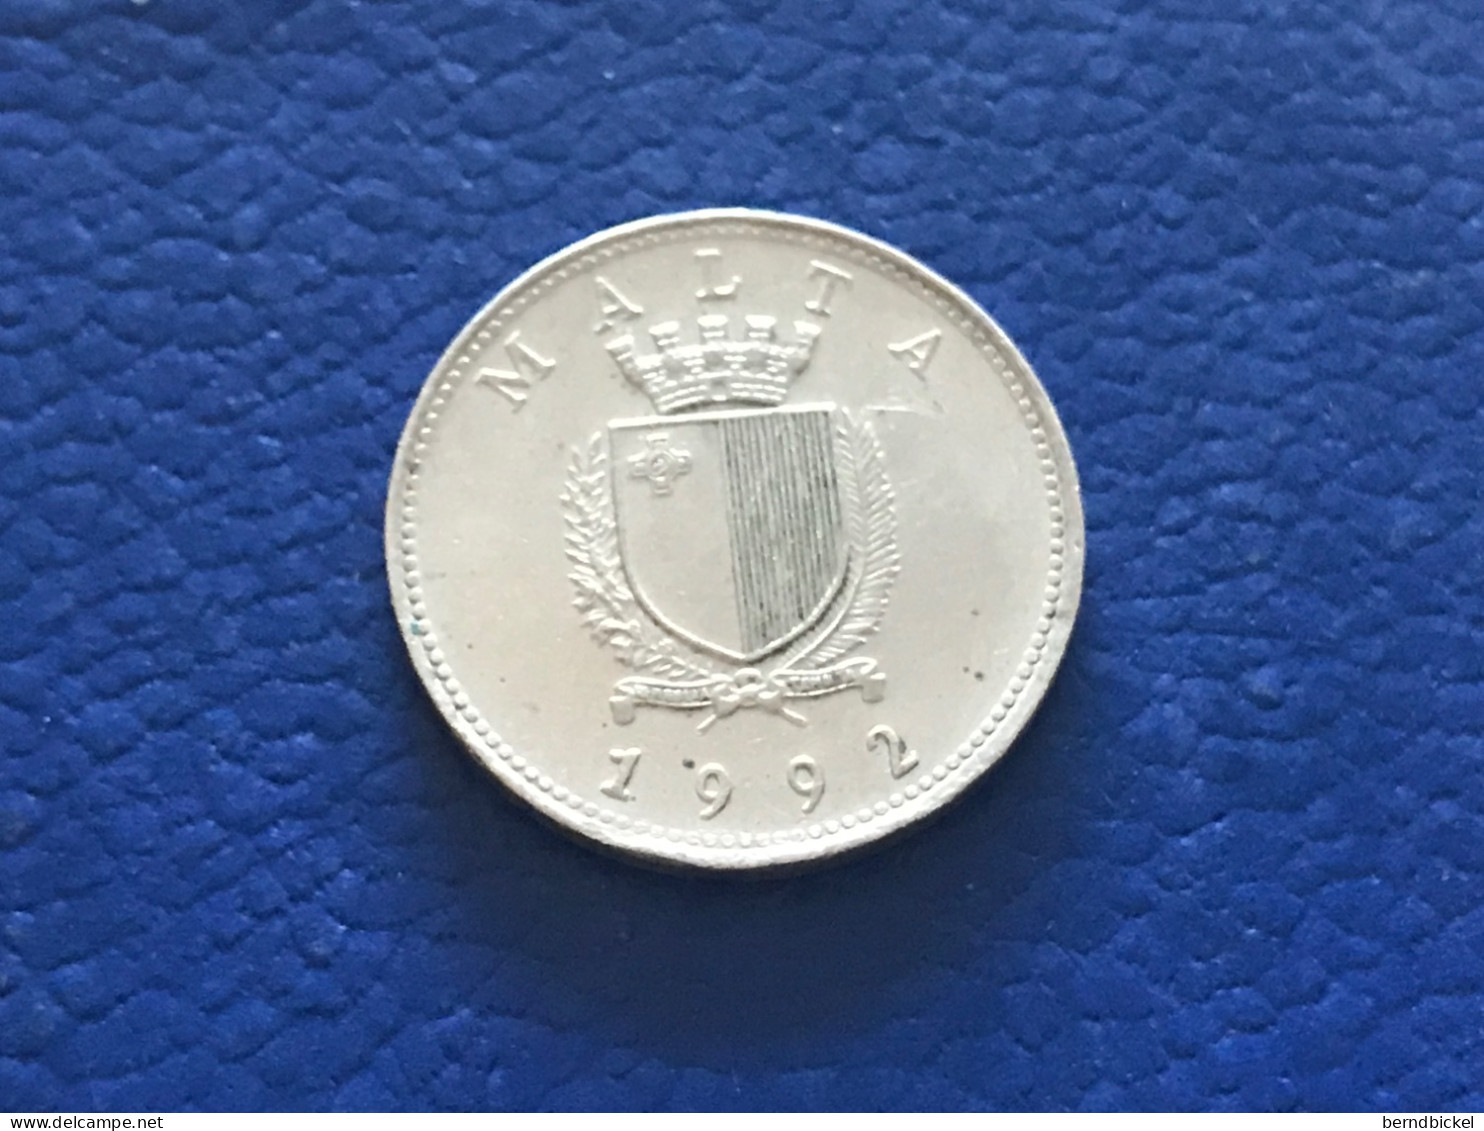 Münze Münzen Umlaufmünze Malta 10 Cents 1992 - Malte